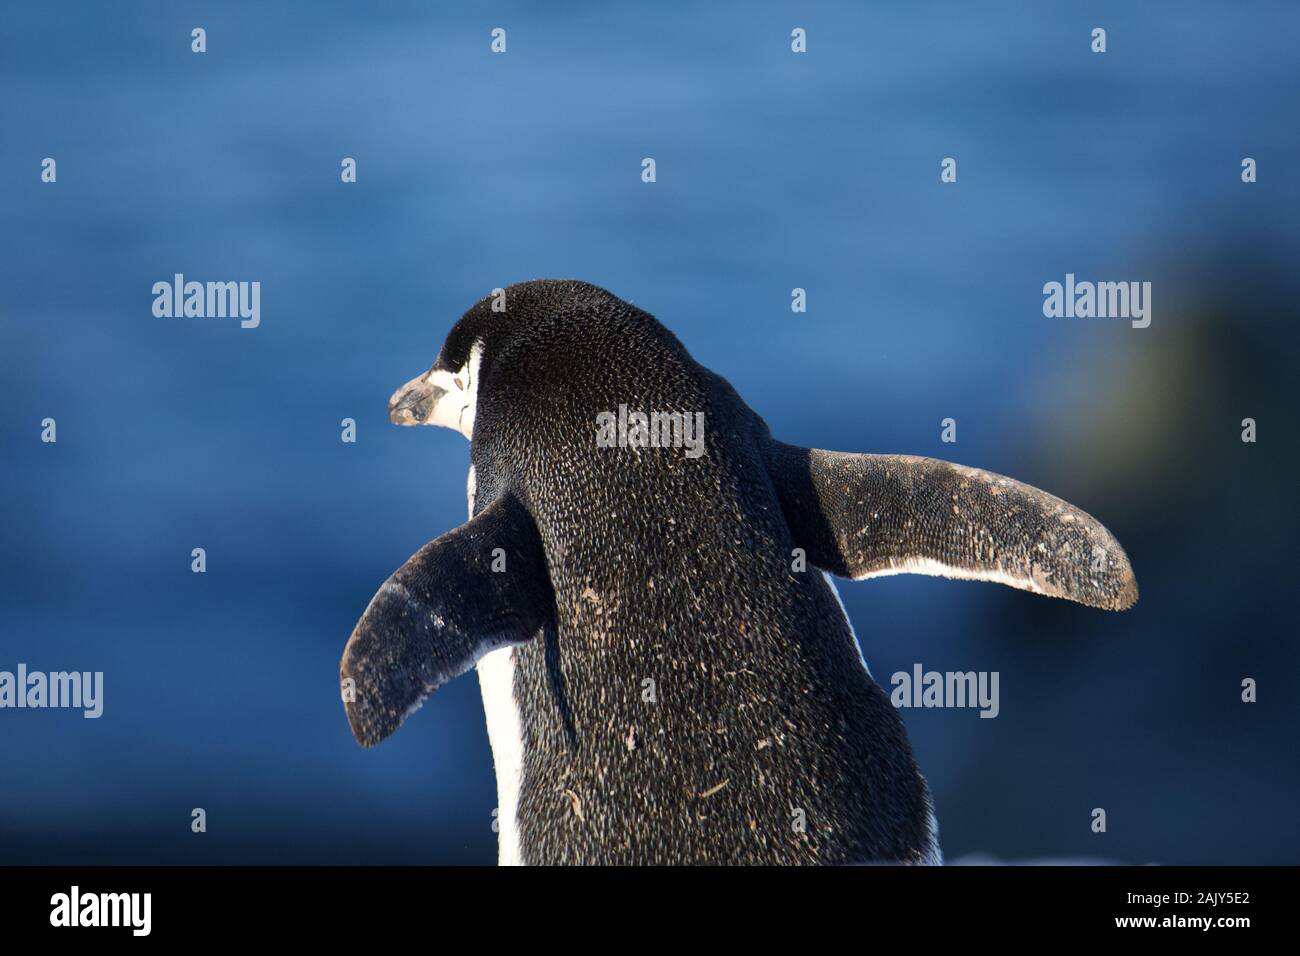 Zügelpinguin, Antarktis. Zügelpinguin in der Antarktis Stockfoto